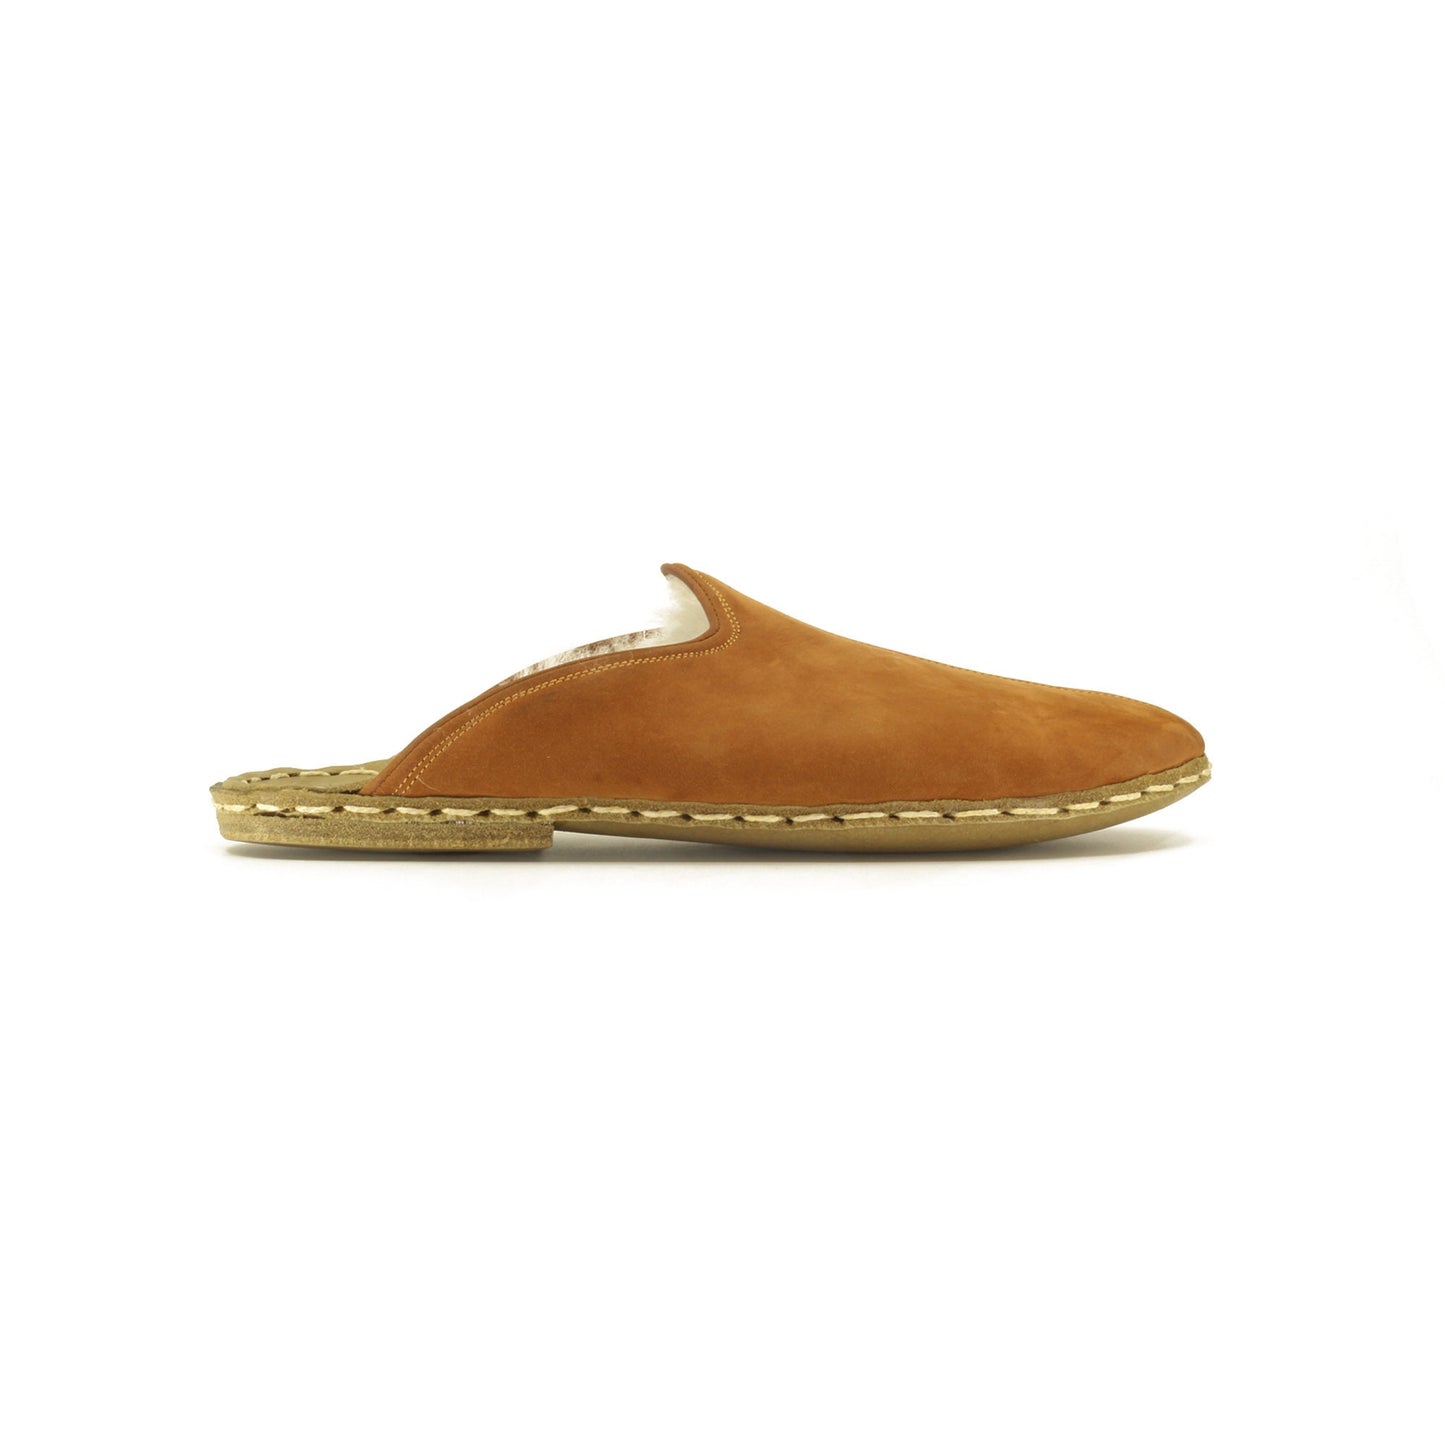 Orange Nubuk Leather Fur Slippers For Women - Nefes Shoes